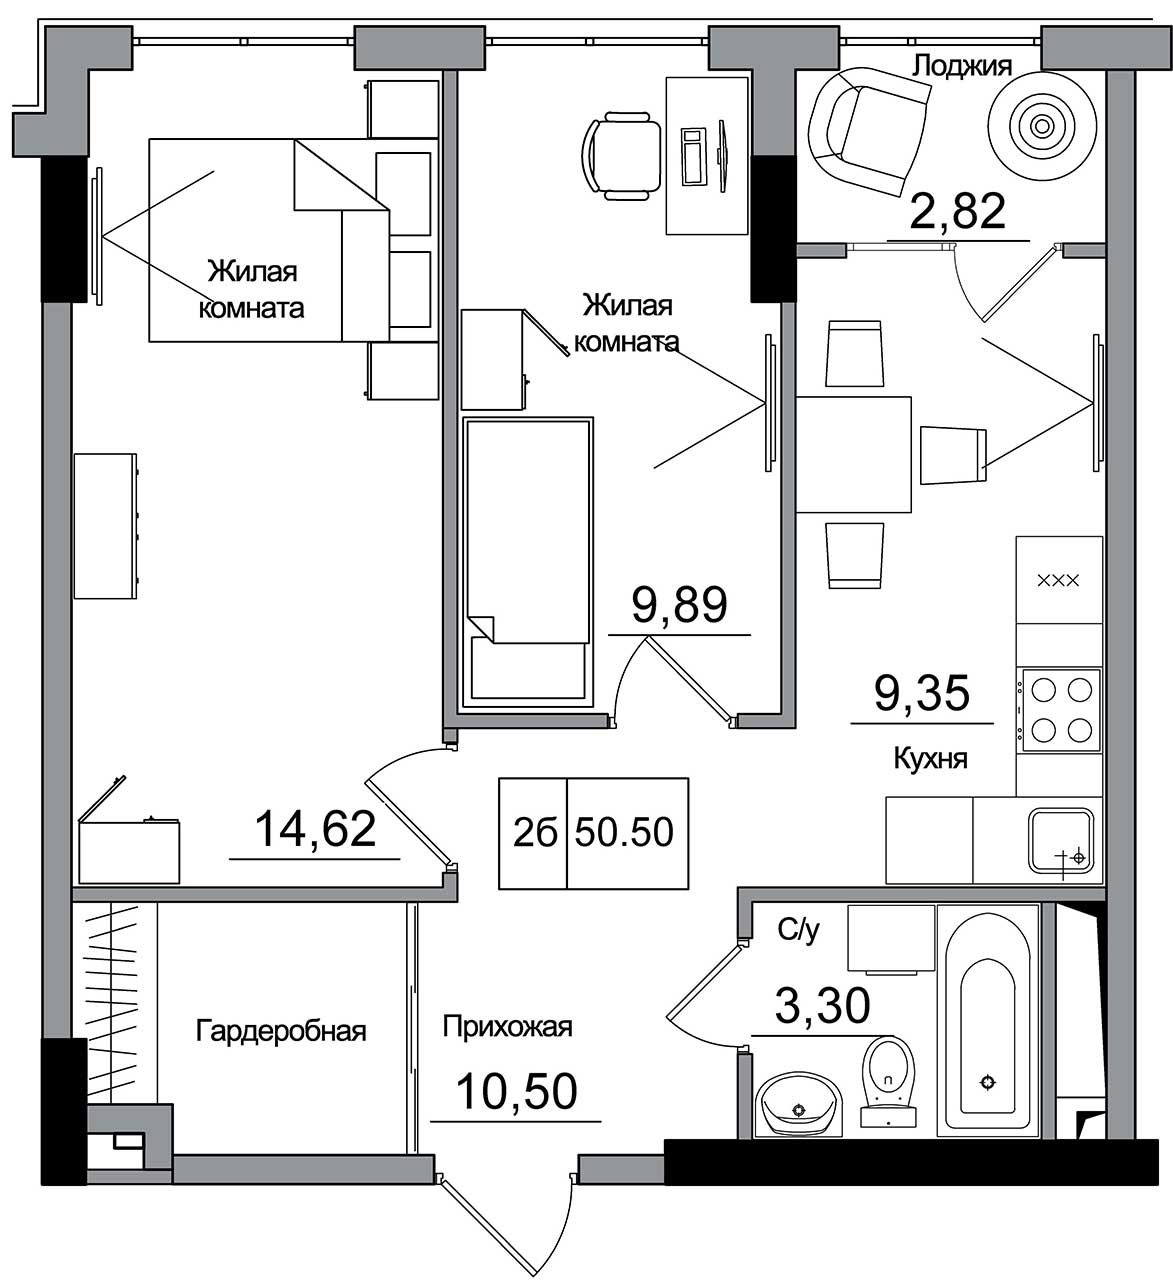 Планування 2-к квартира площею 50.5м2, AB-16-10/00007.